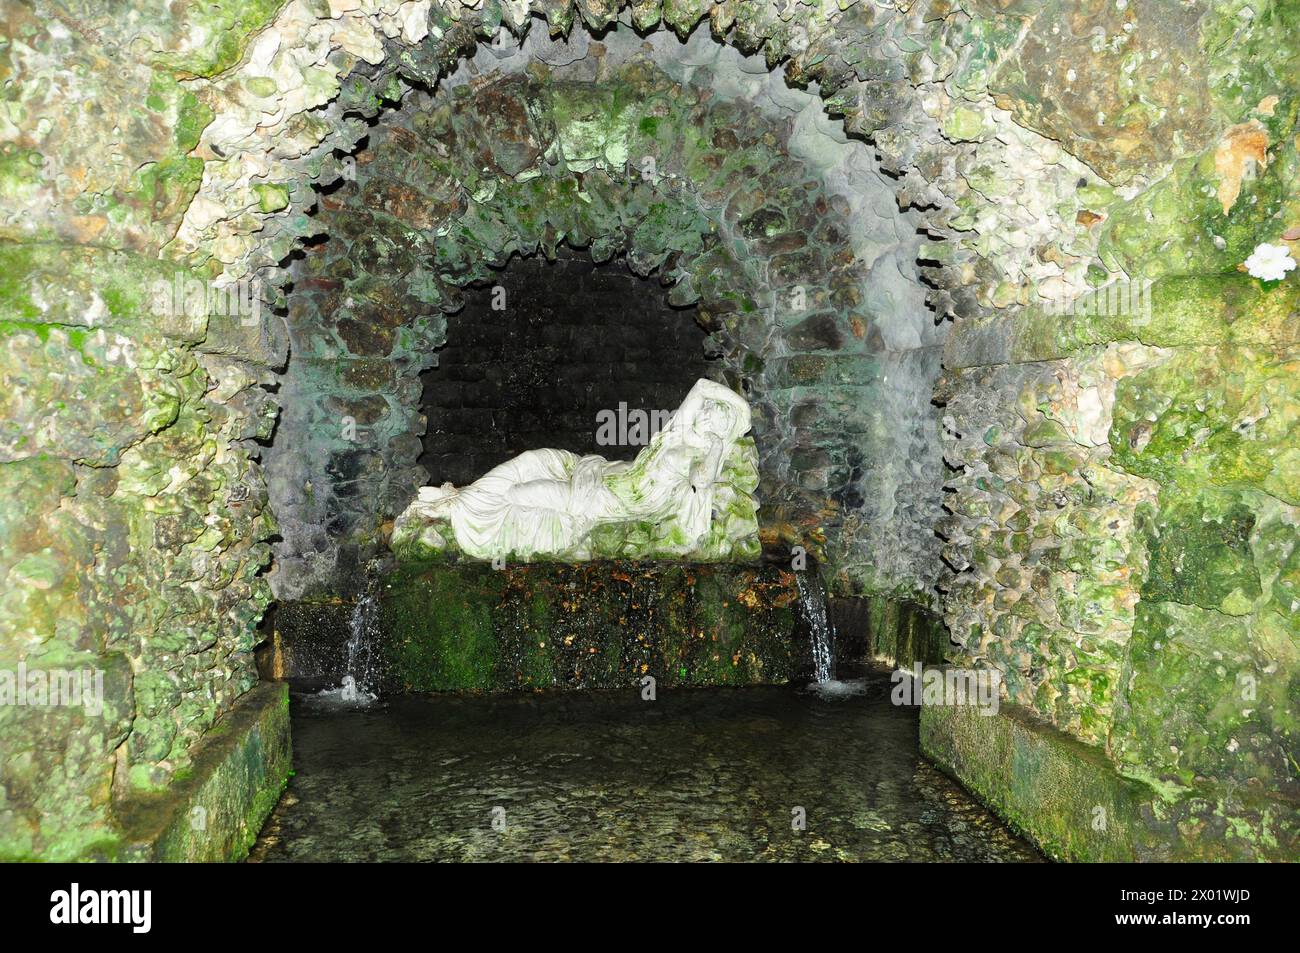 Sculpture en pierre d'Ariane endormie dans la grotte au bord du lac dans les jardins Stourhead dans le Wiltshire. Banque D'Images